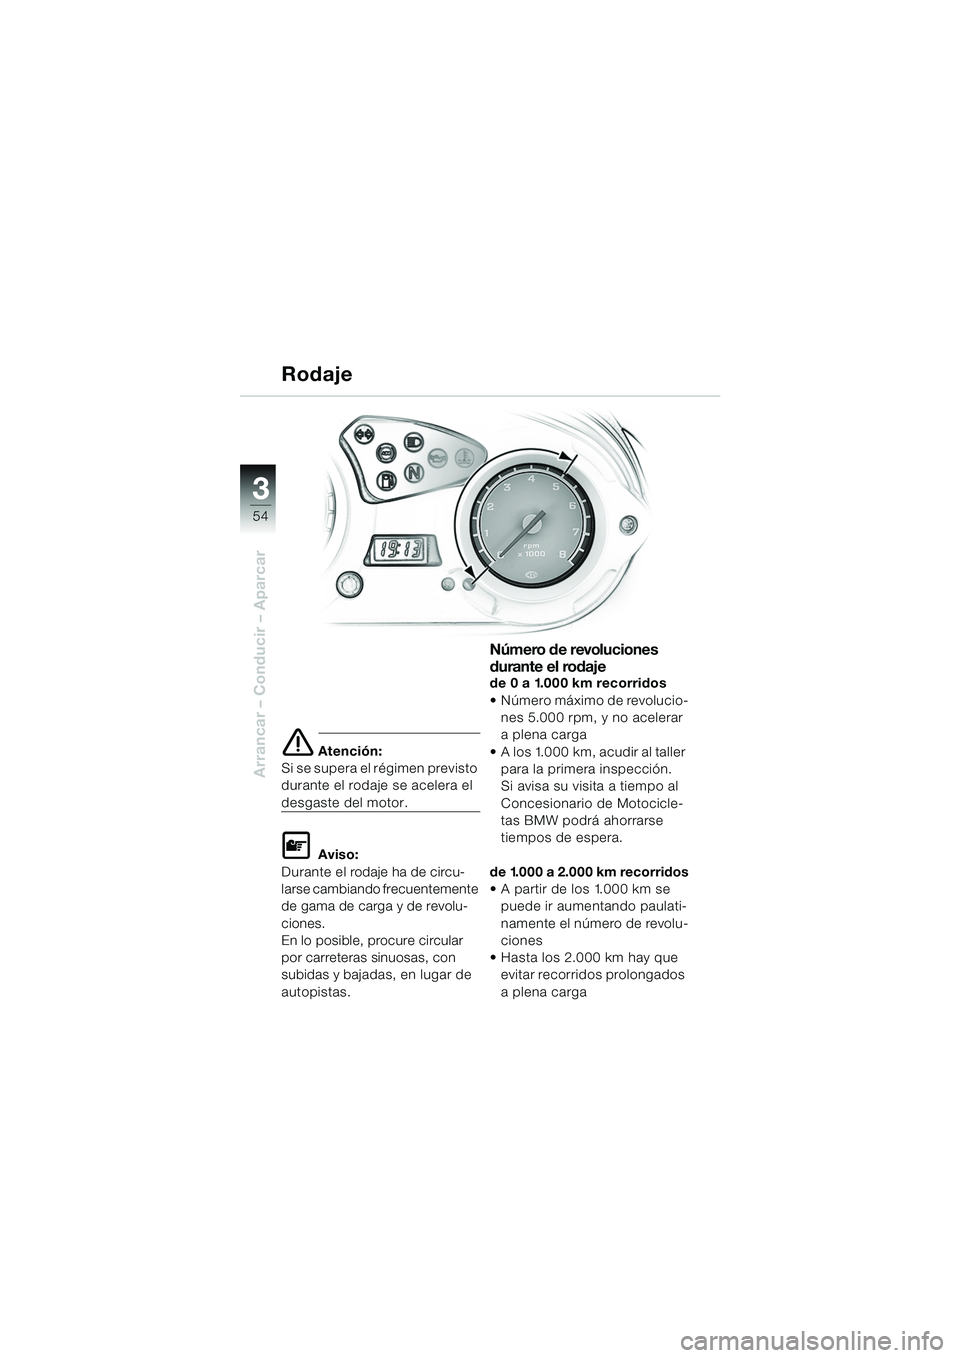 BMW MOTORRAD F 650 GS DAKAR 2003  Manual de instrucciones (in Spanish) 3
54
Arrancar – Conducir – Aparcar
e Atención:
Si se supera el régimen previsto 
durante el rodaje se acelera el 
desgaste del motor.
L Aviso:
Durante el rodaje ha de circu-
larse cambiando frec